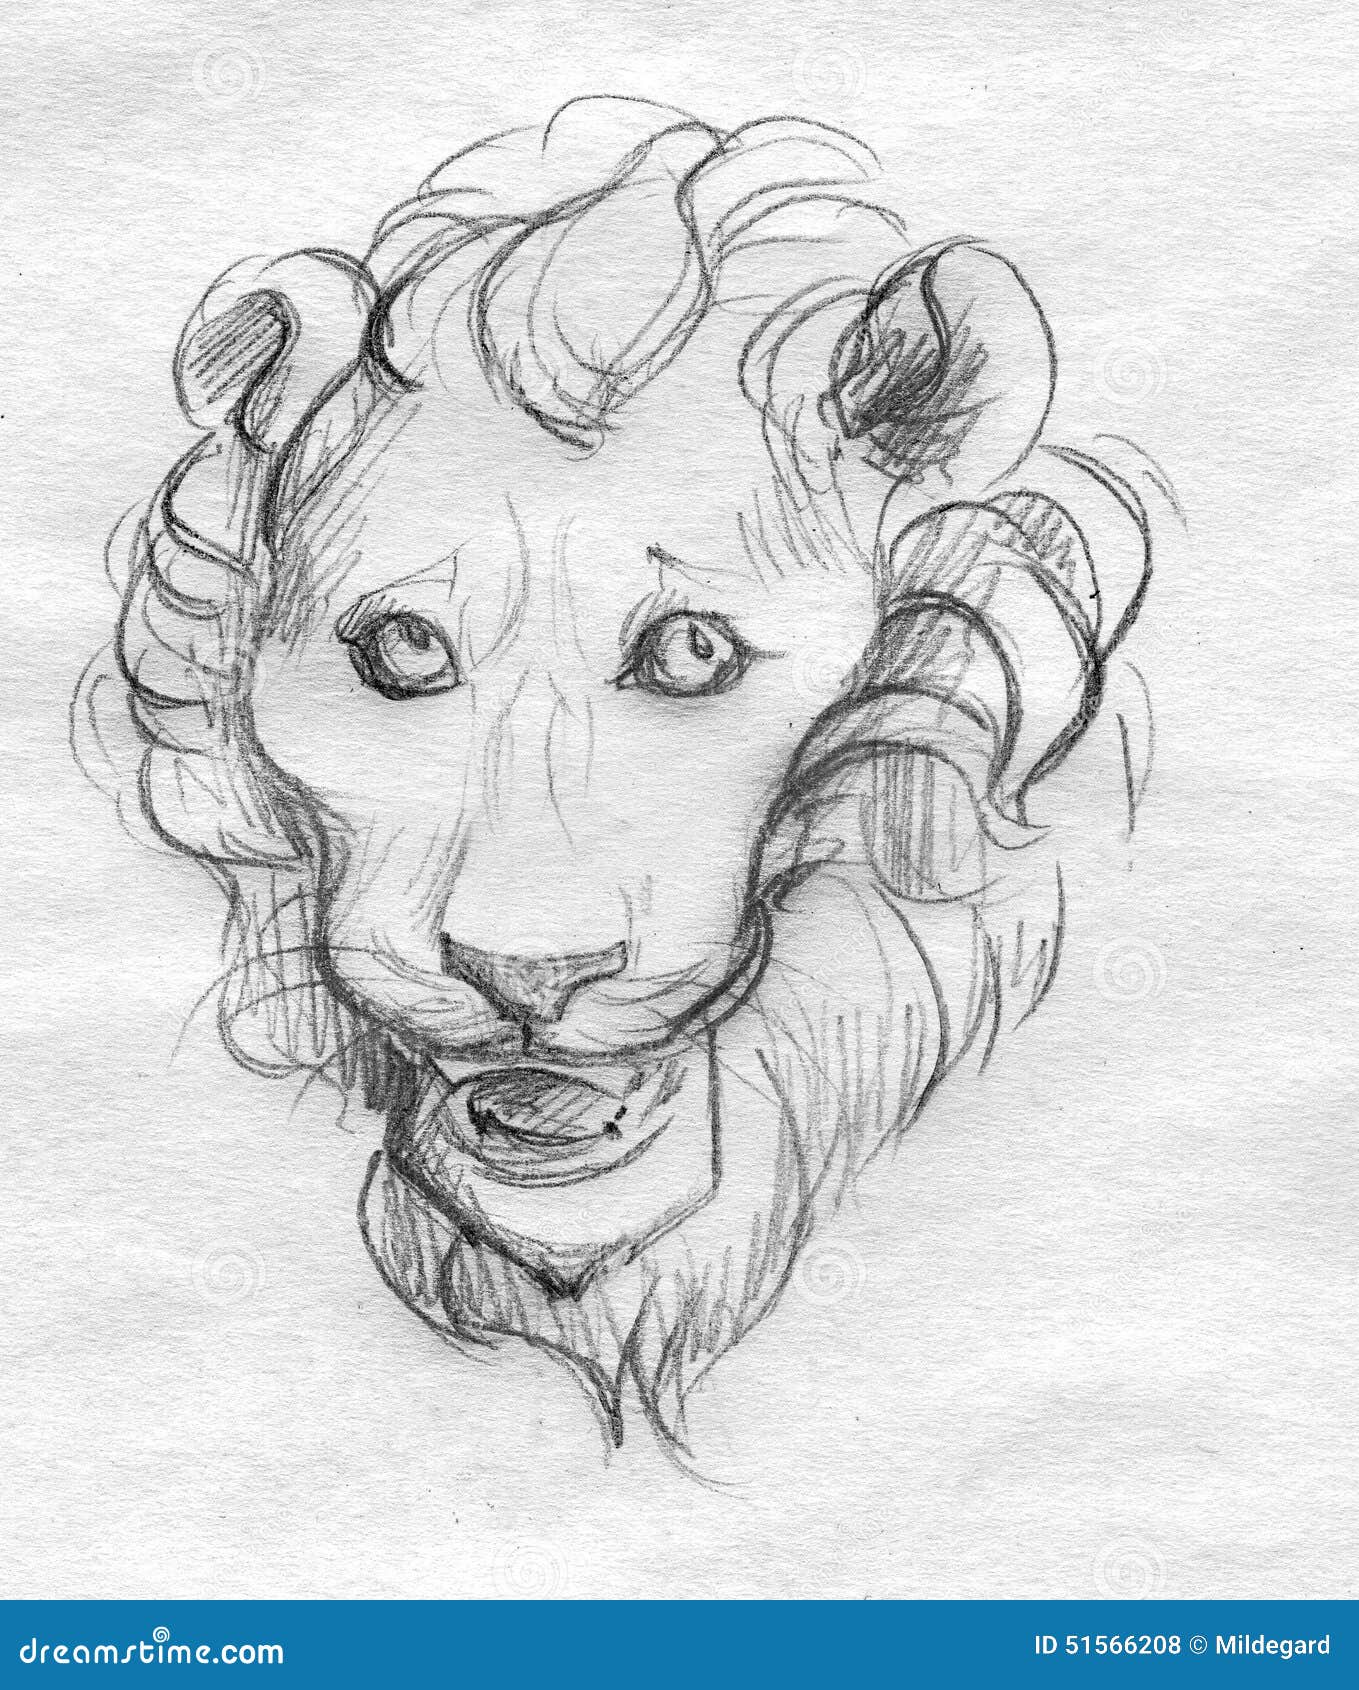 Colour Pencil Sketch - Lion